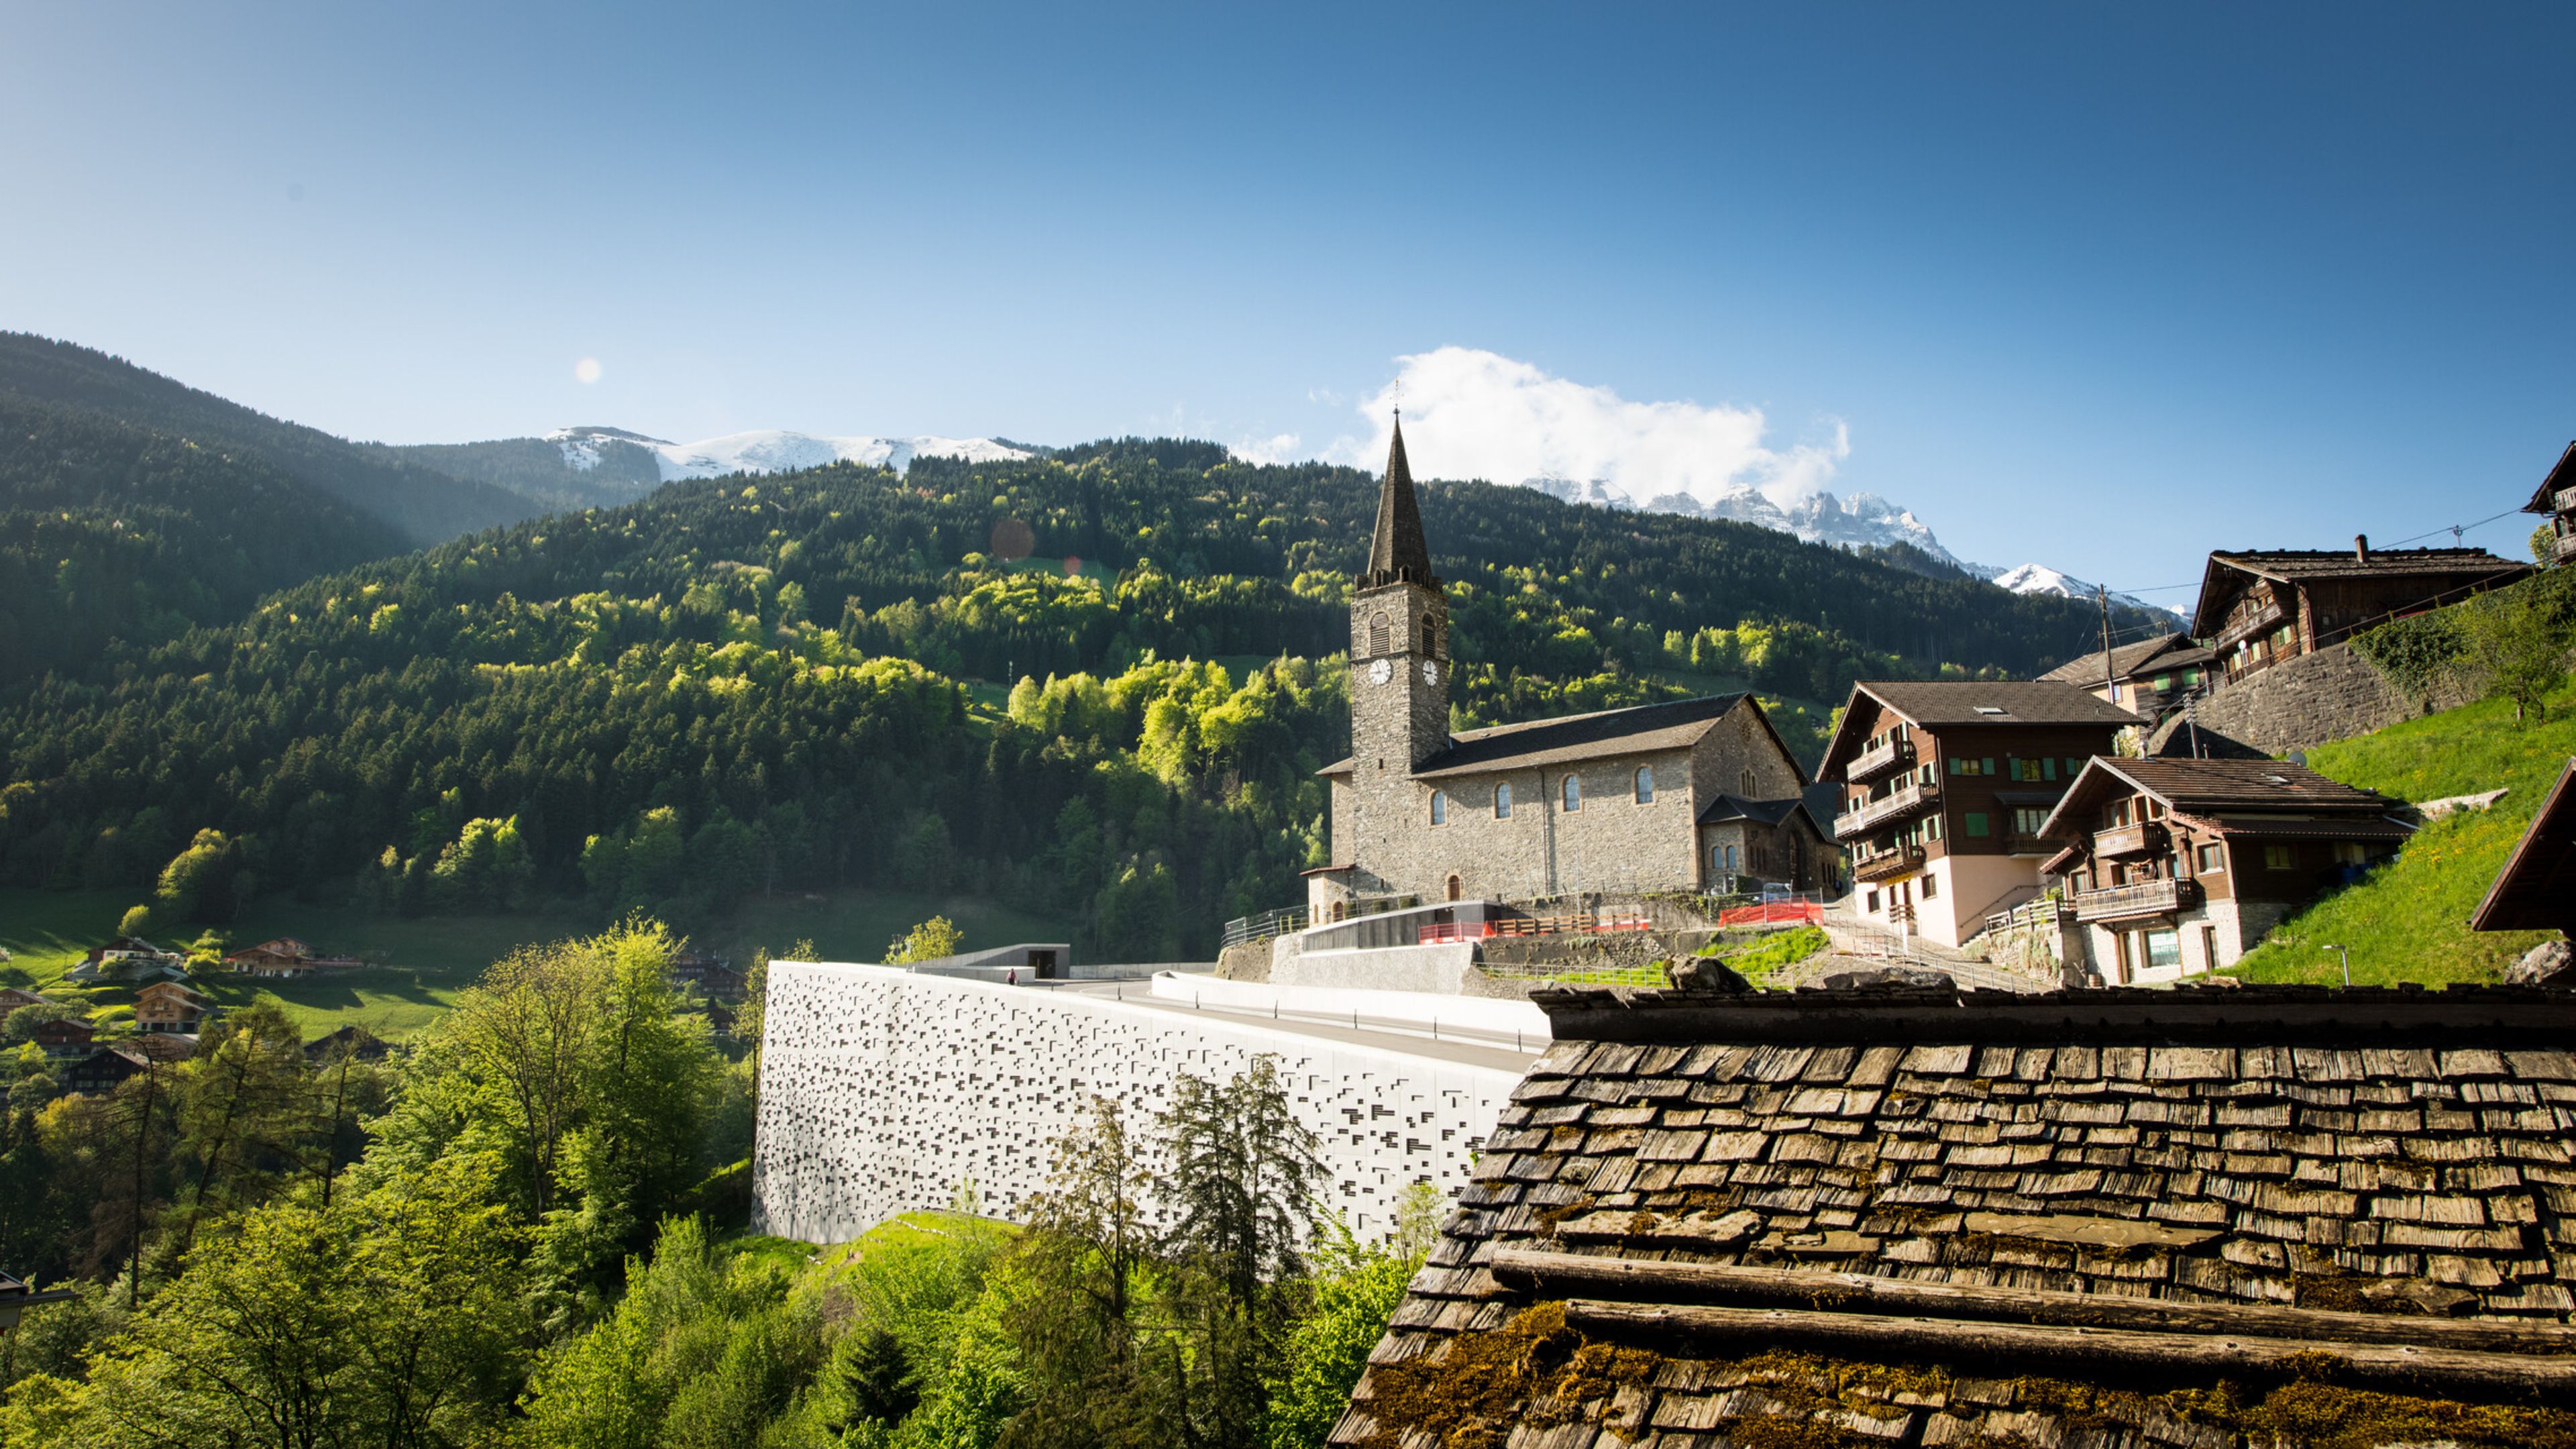 Eglise, village de Troistorrents, Valais, Suisse